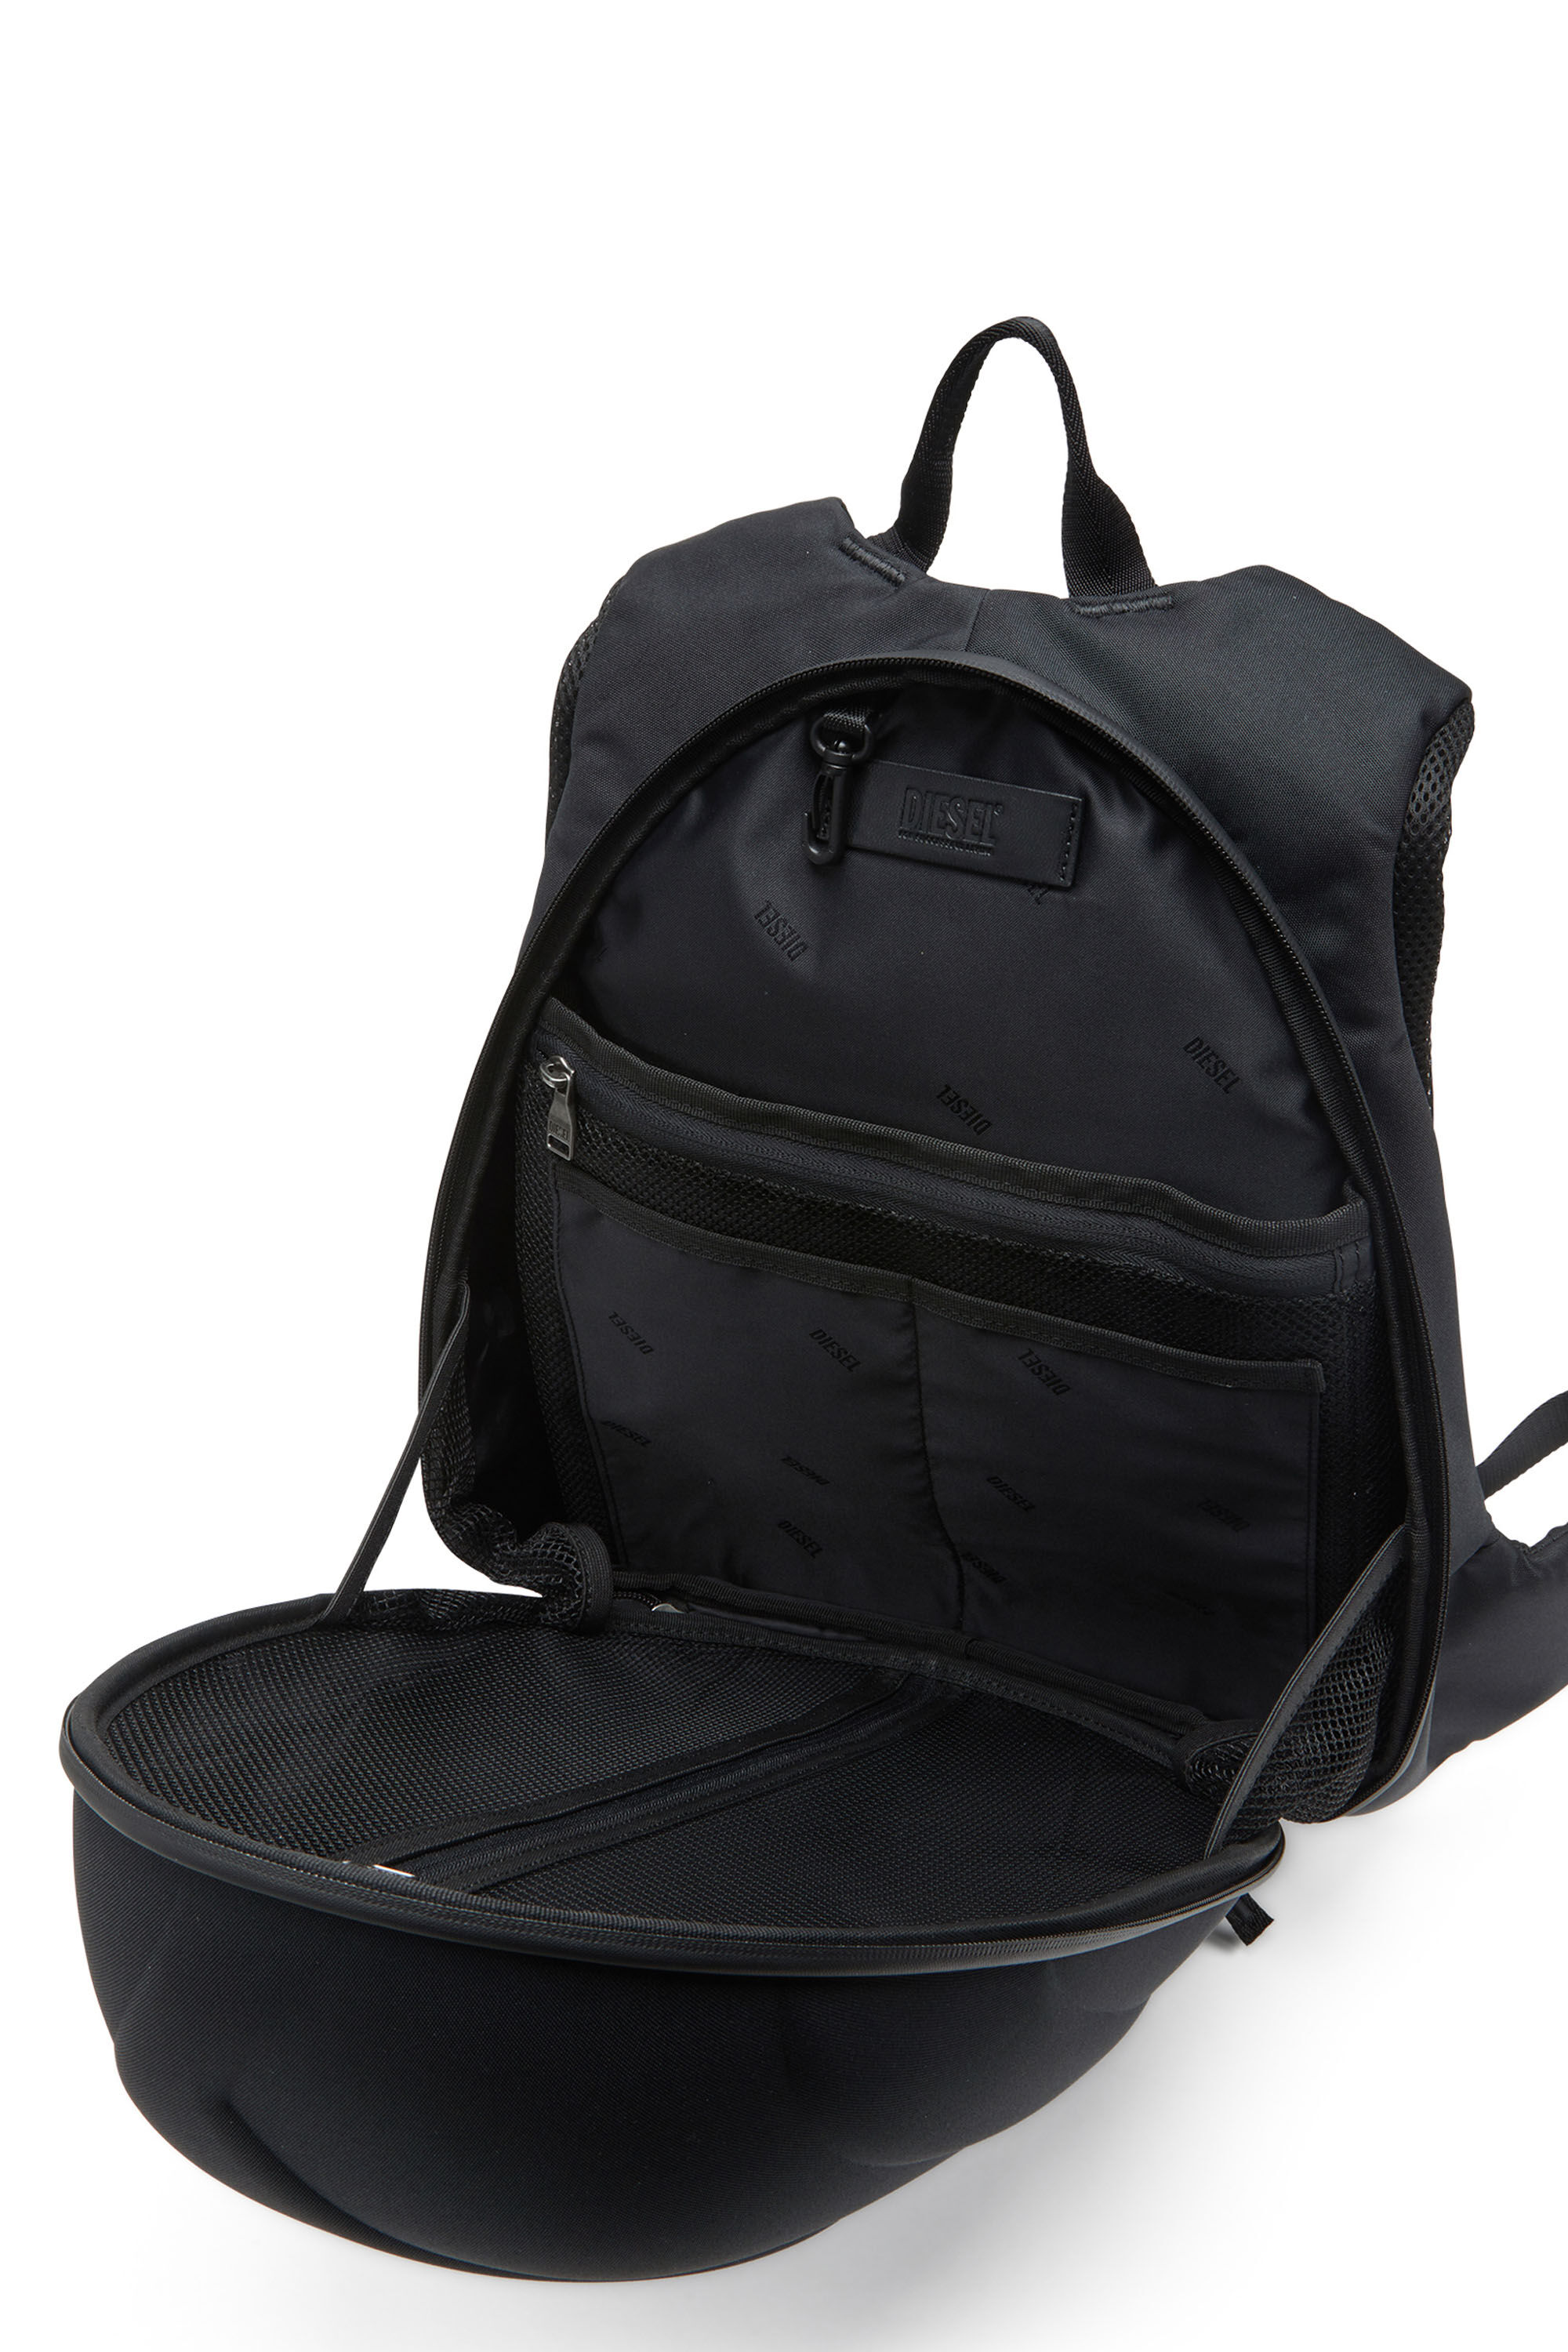 1DR-Pod Backpack - Zaino rigido con logo Oval D Uomo